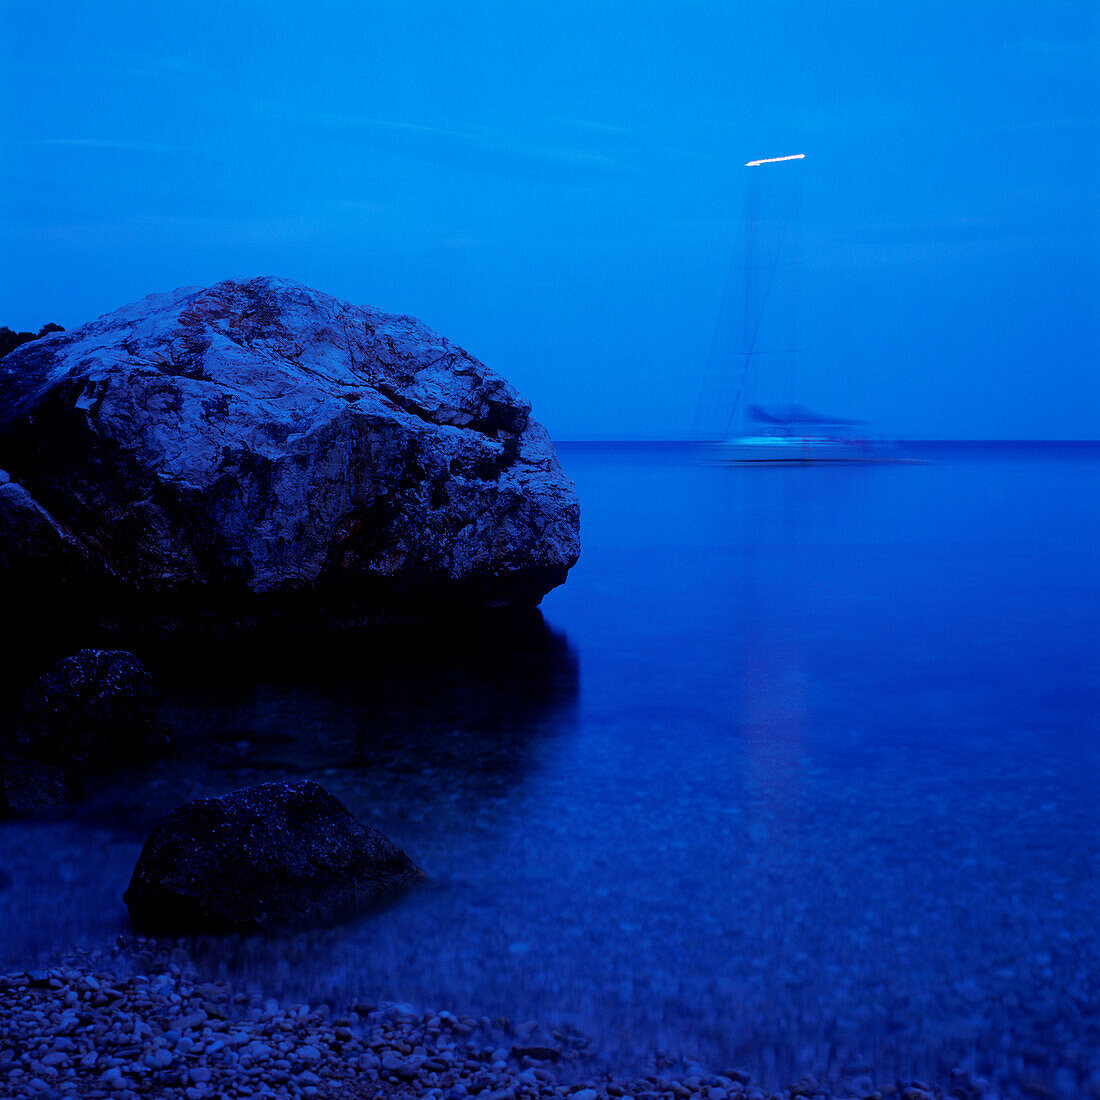 Rock at Adriatic Seashore, saiboat in background, Dalmatia, Croatia